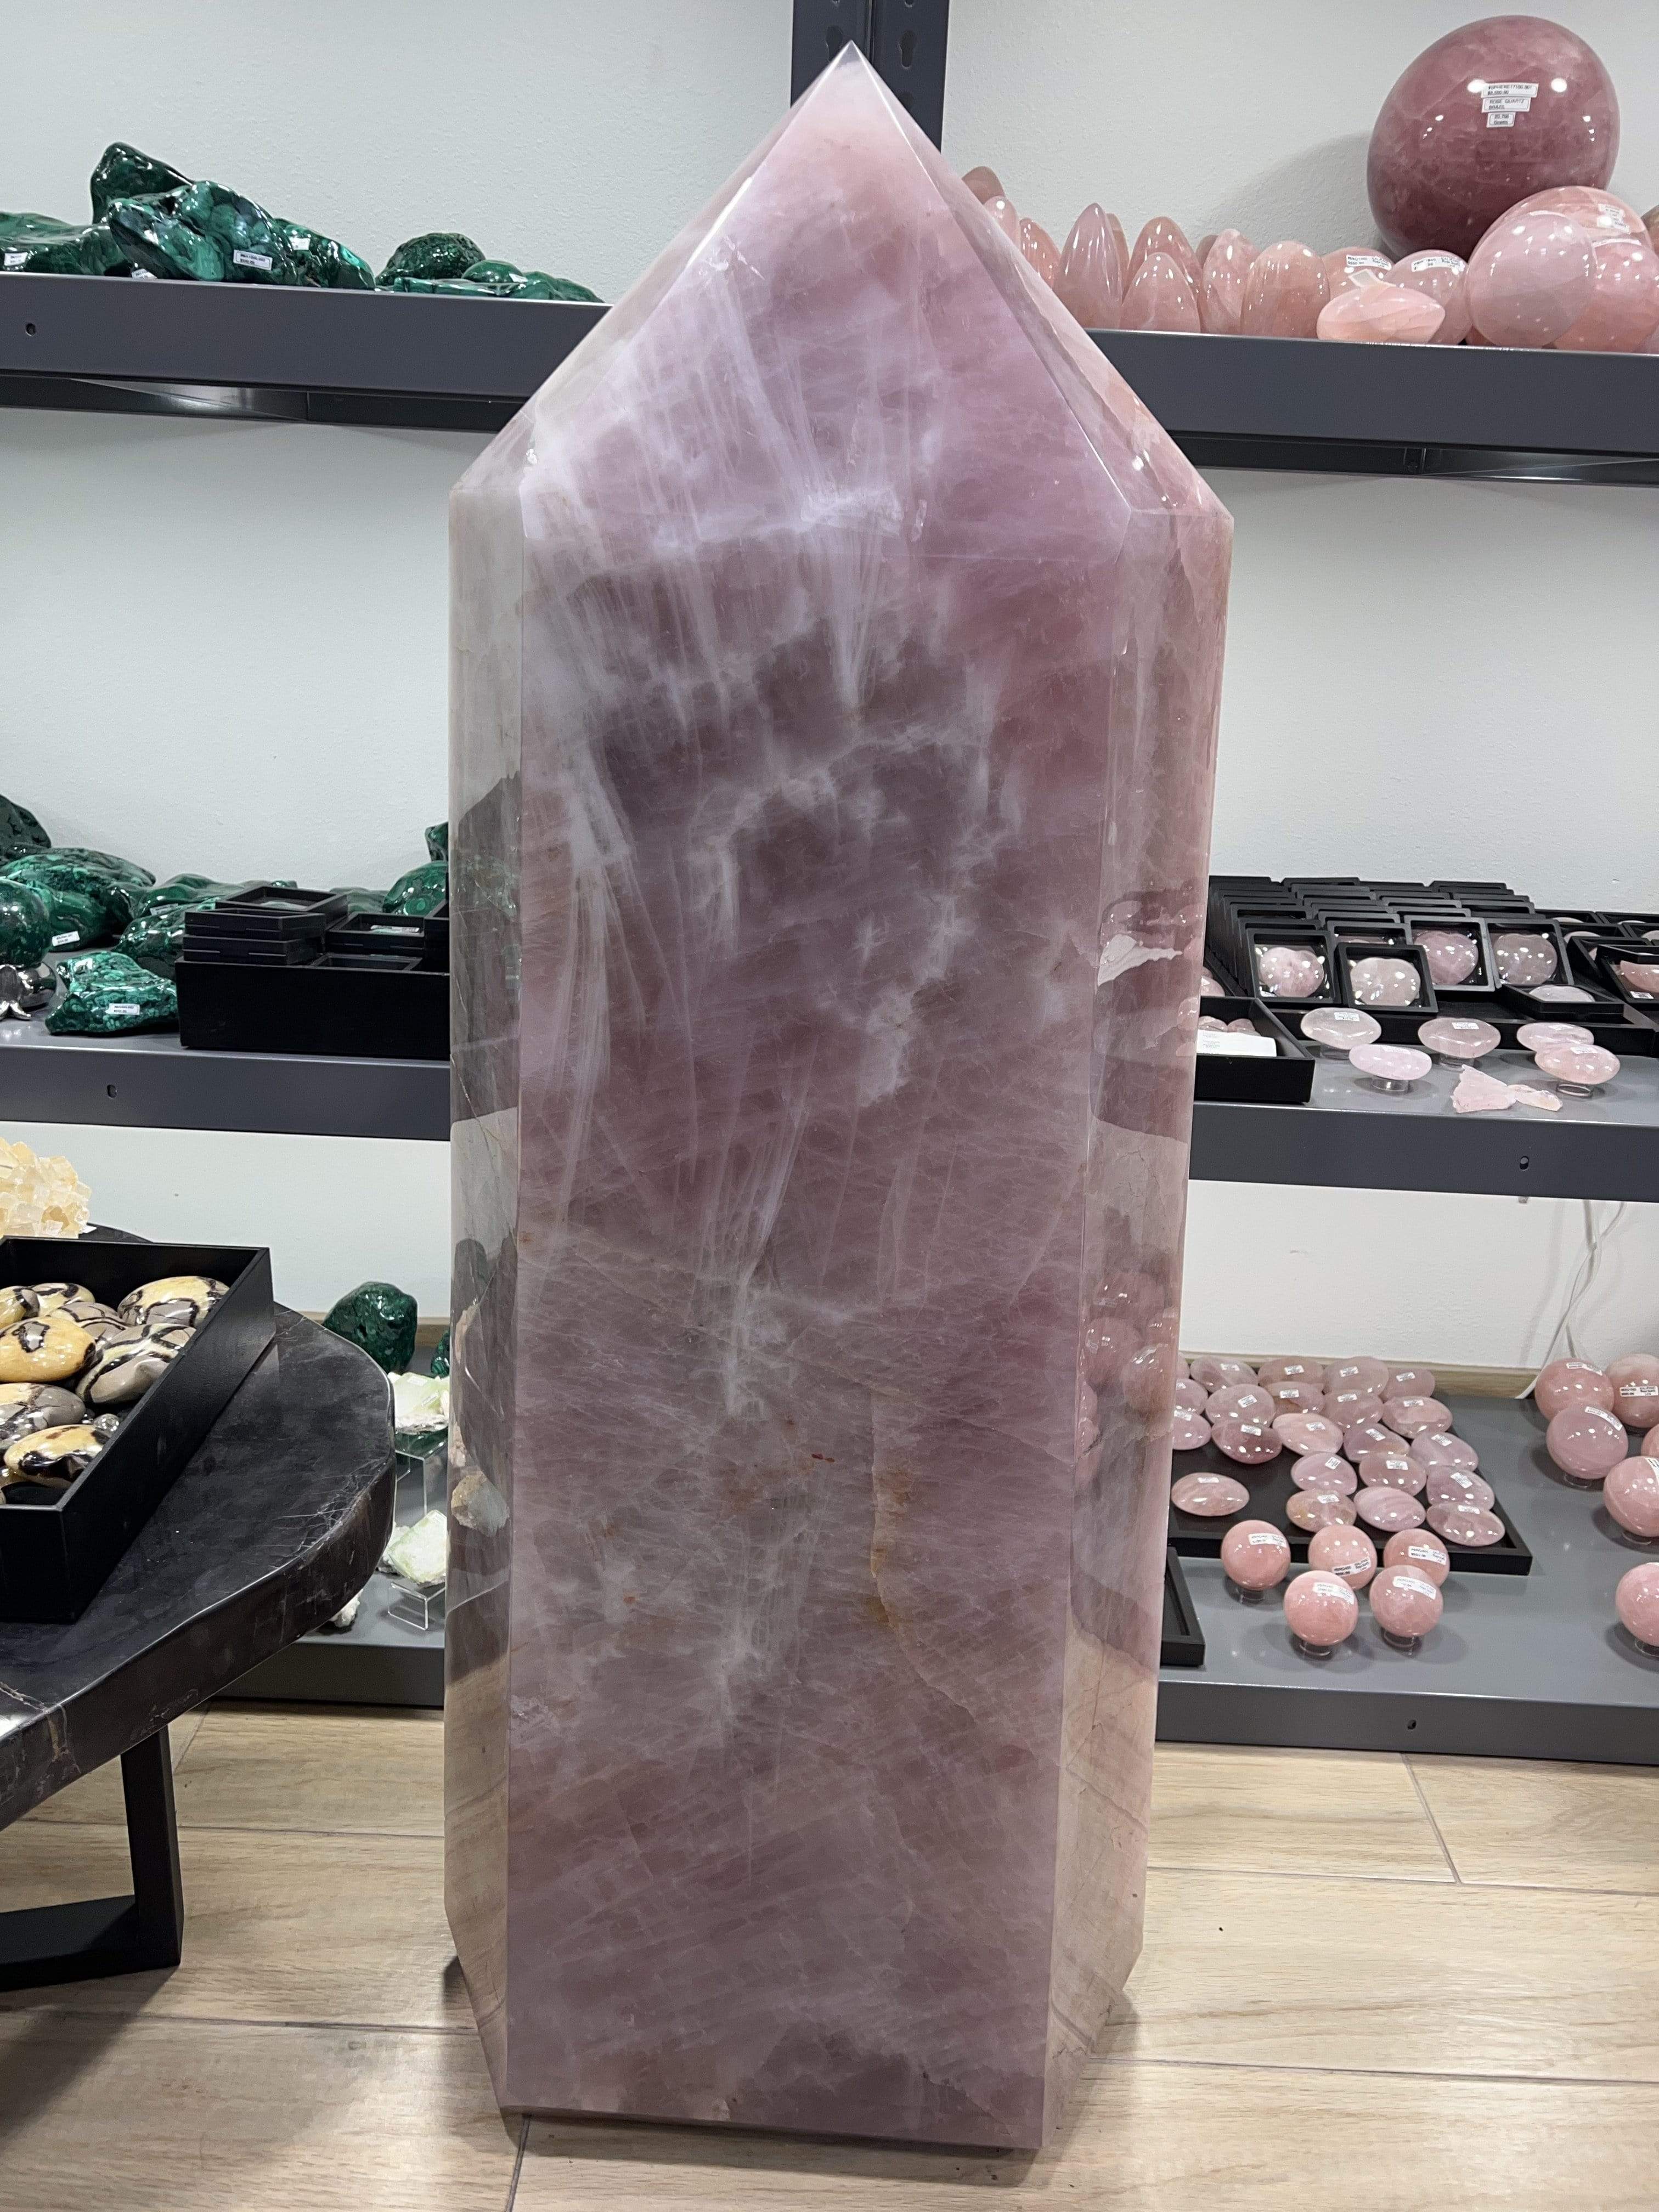 Kalifano Rose Quartz Natural Rose Quartz Obelisk from Brazil - 1,102 lbs / 55" RQ150000.002